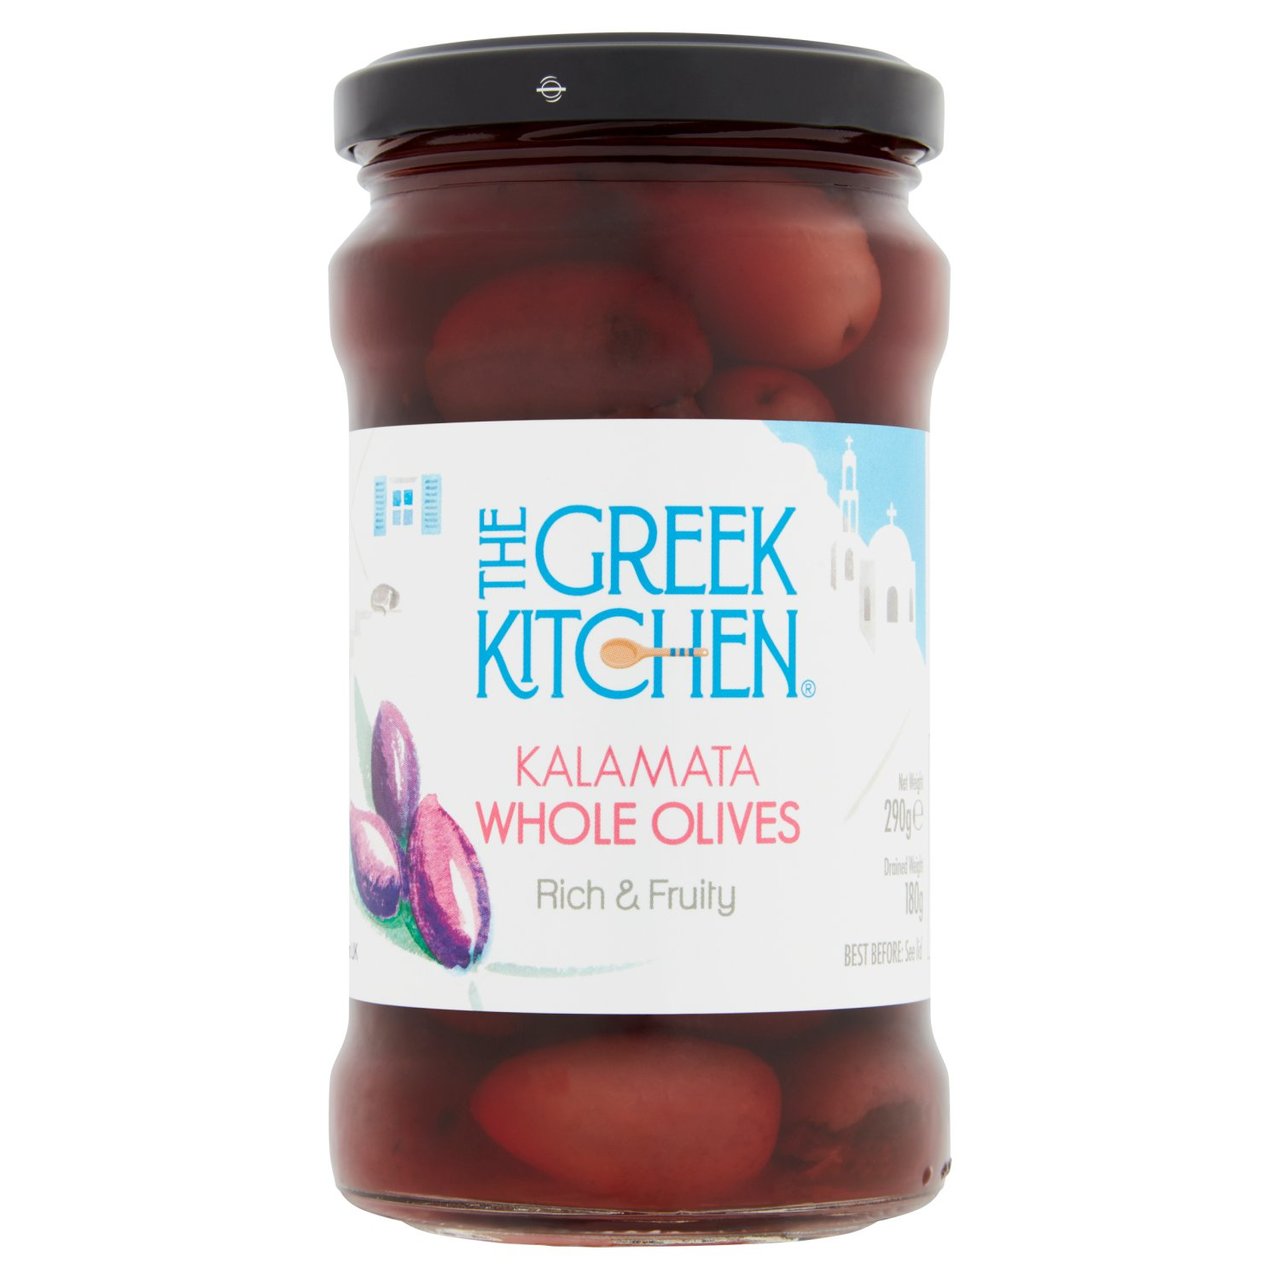 The Greek Kitchen Kalamata Whole Olives